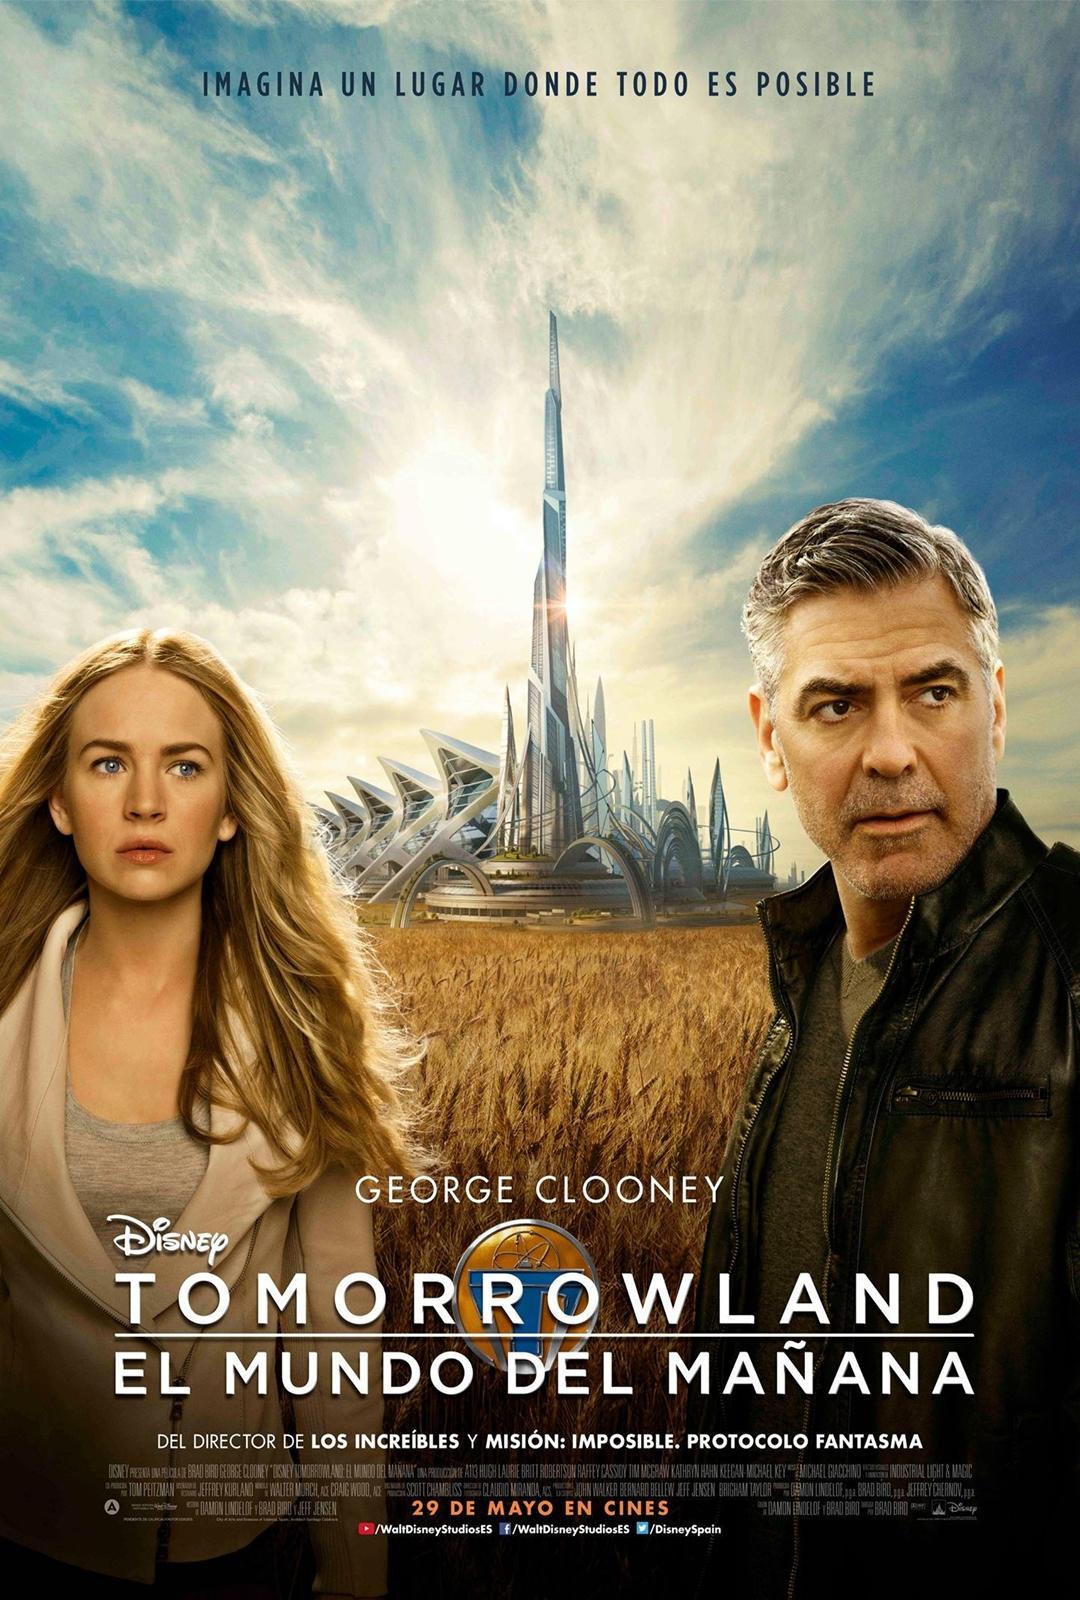 Cinema a la fresca: Tomorrowland. El mundo del mañana